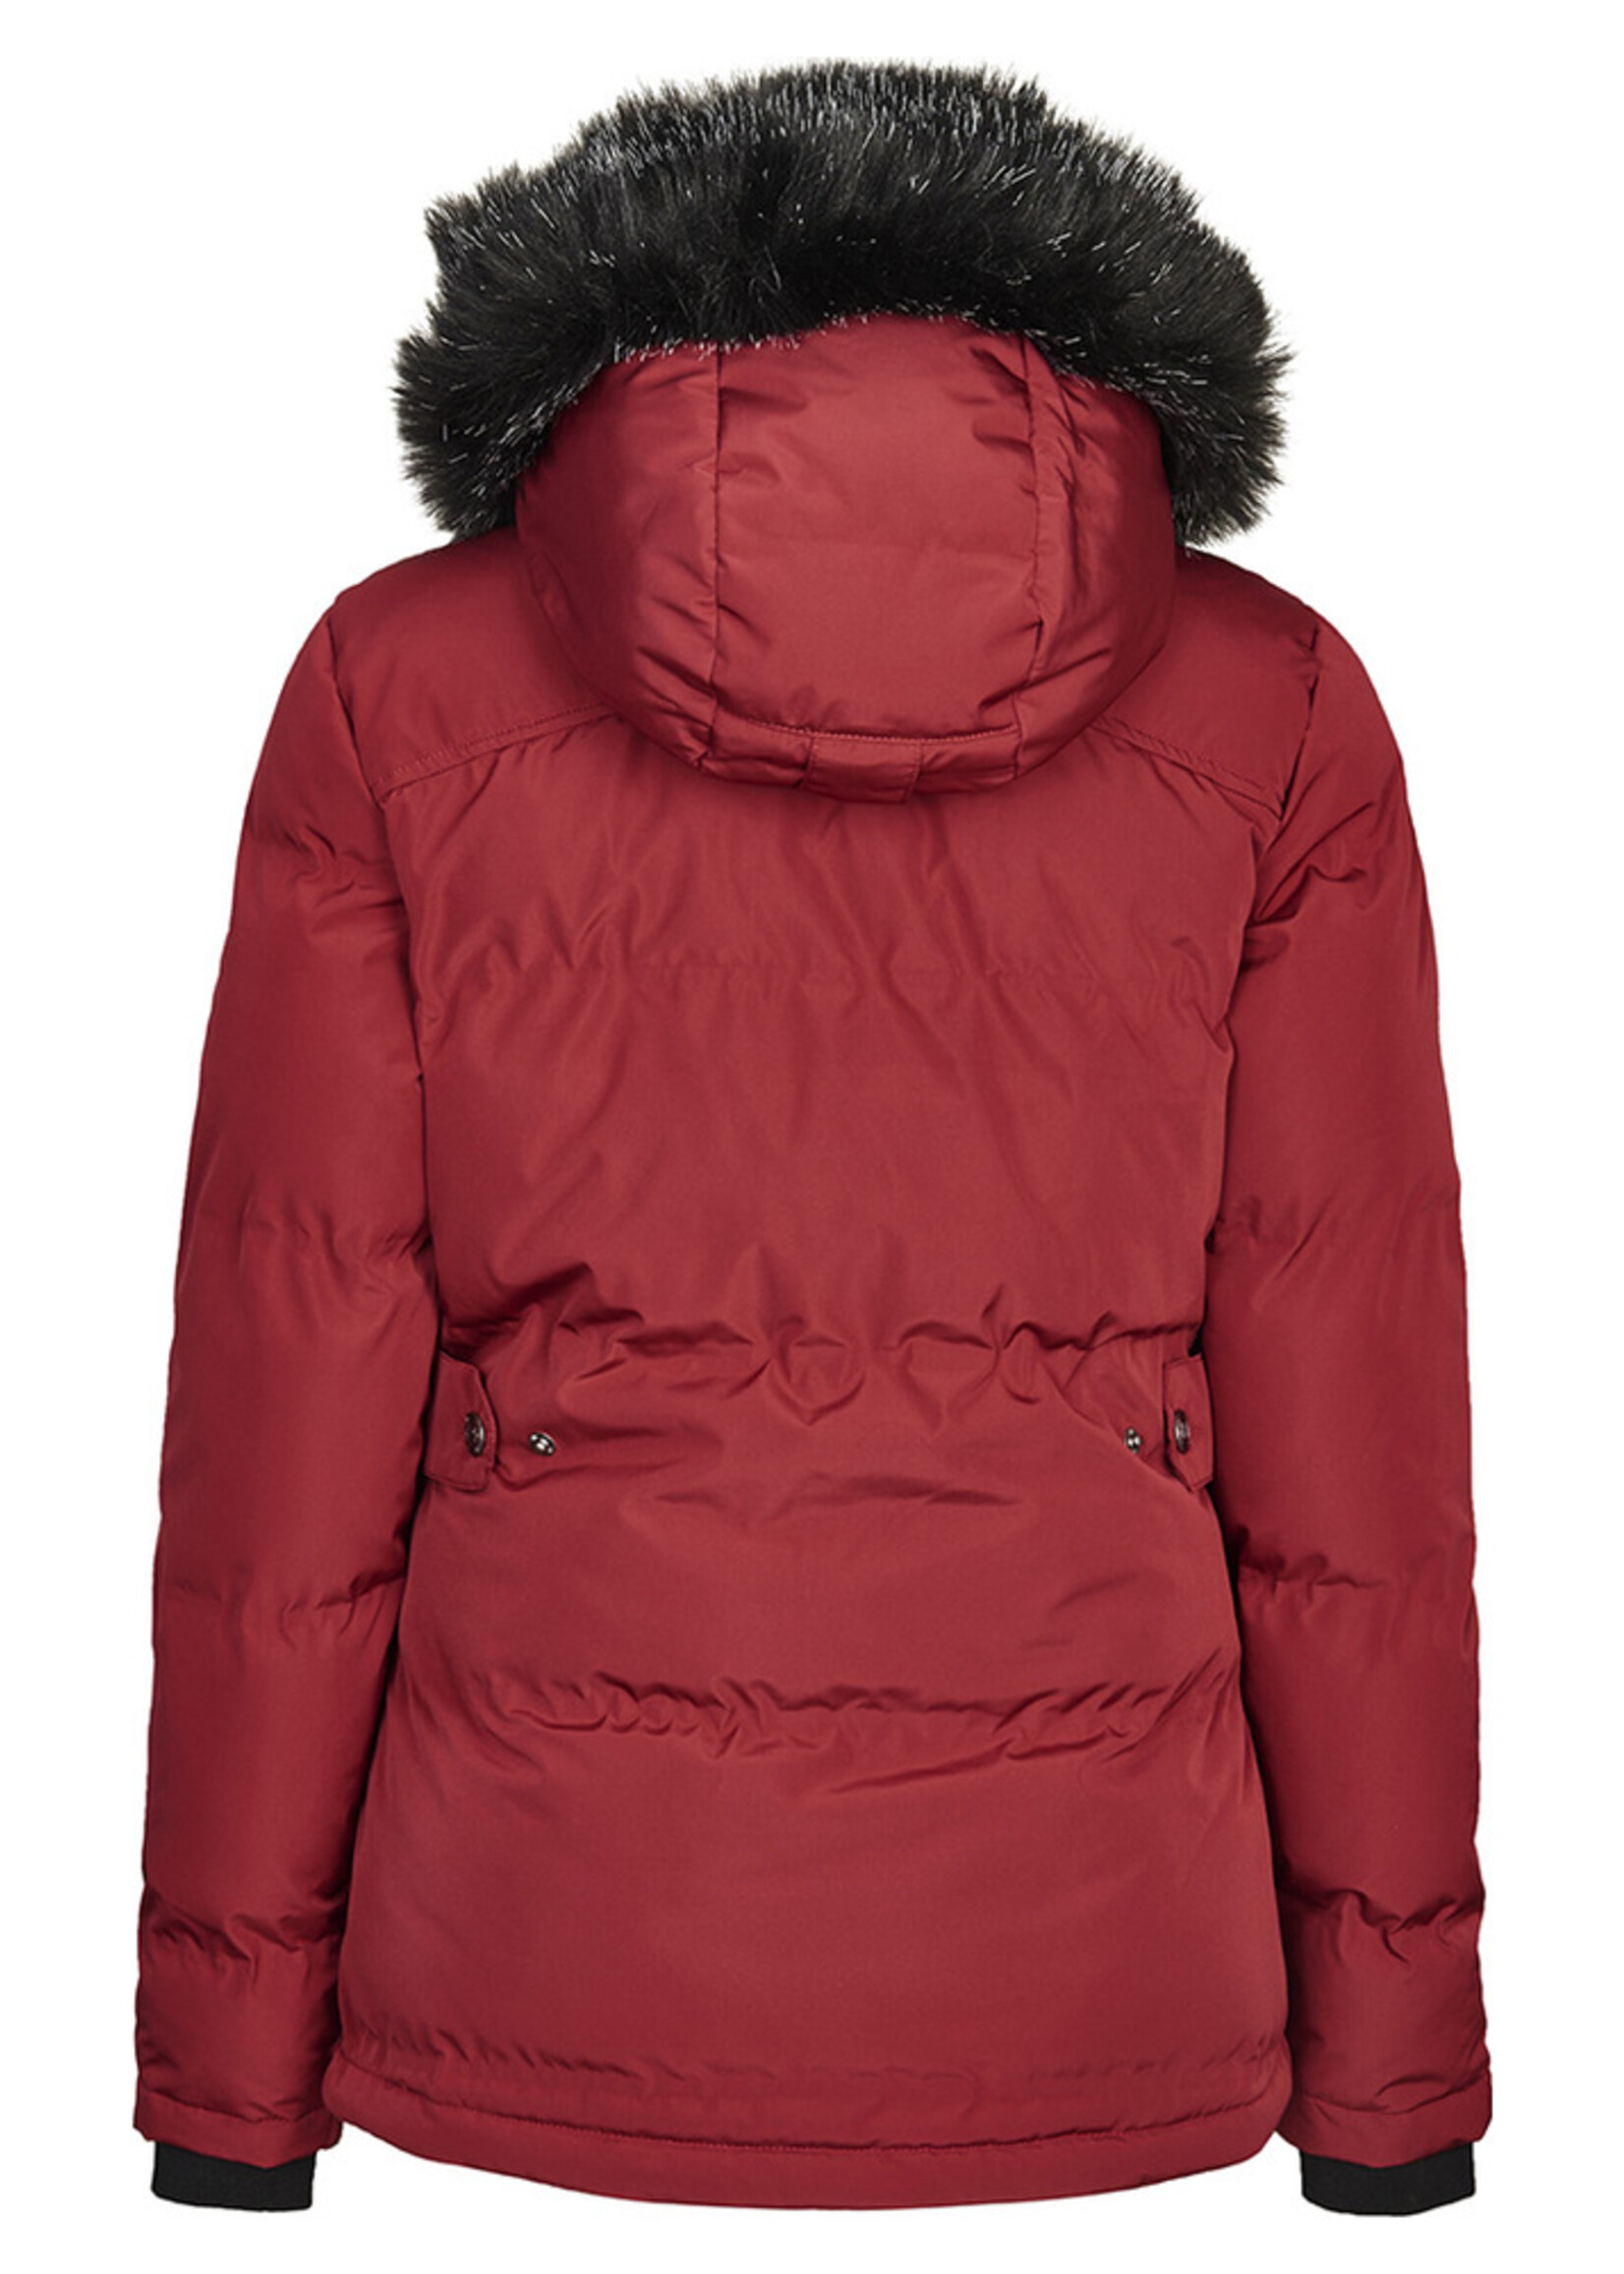 Killtec Manteau d'hiver Femme Arela | Arela Woman Winter Jacket